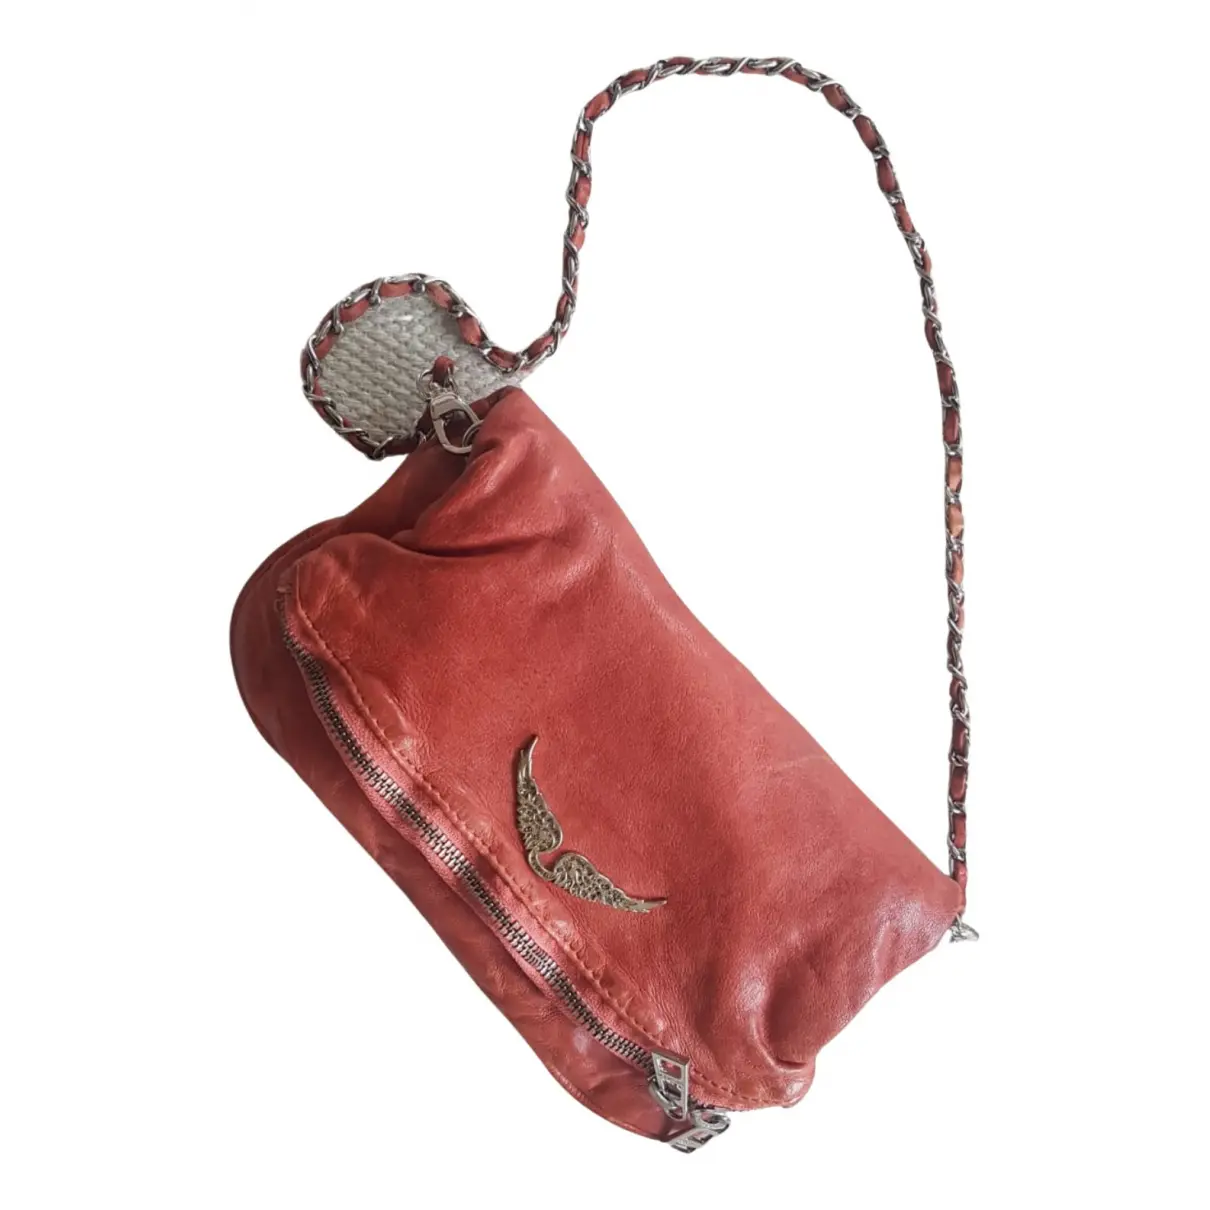 Rock leather handbag Zadig & Voltaire